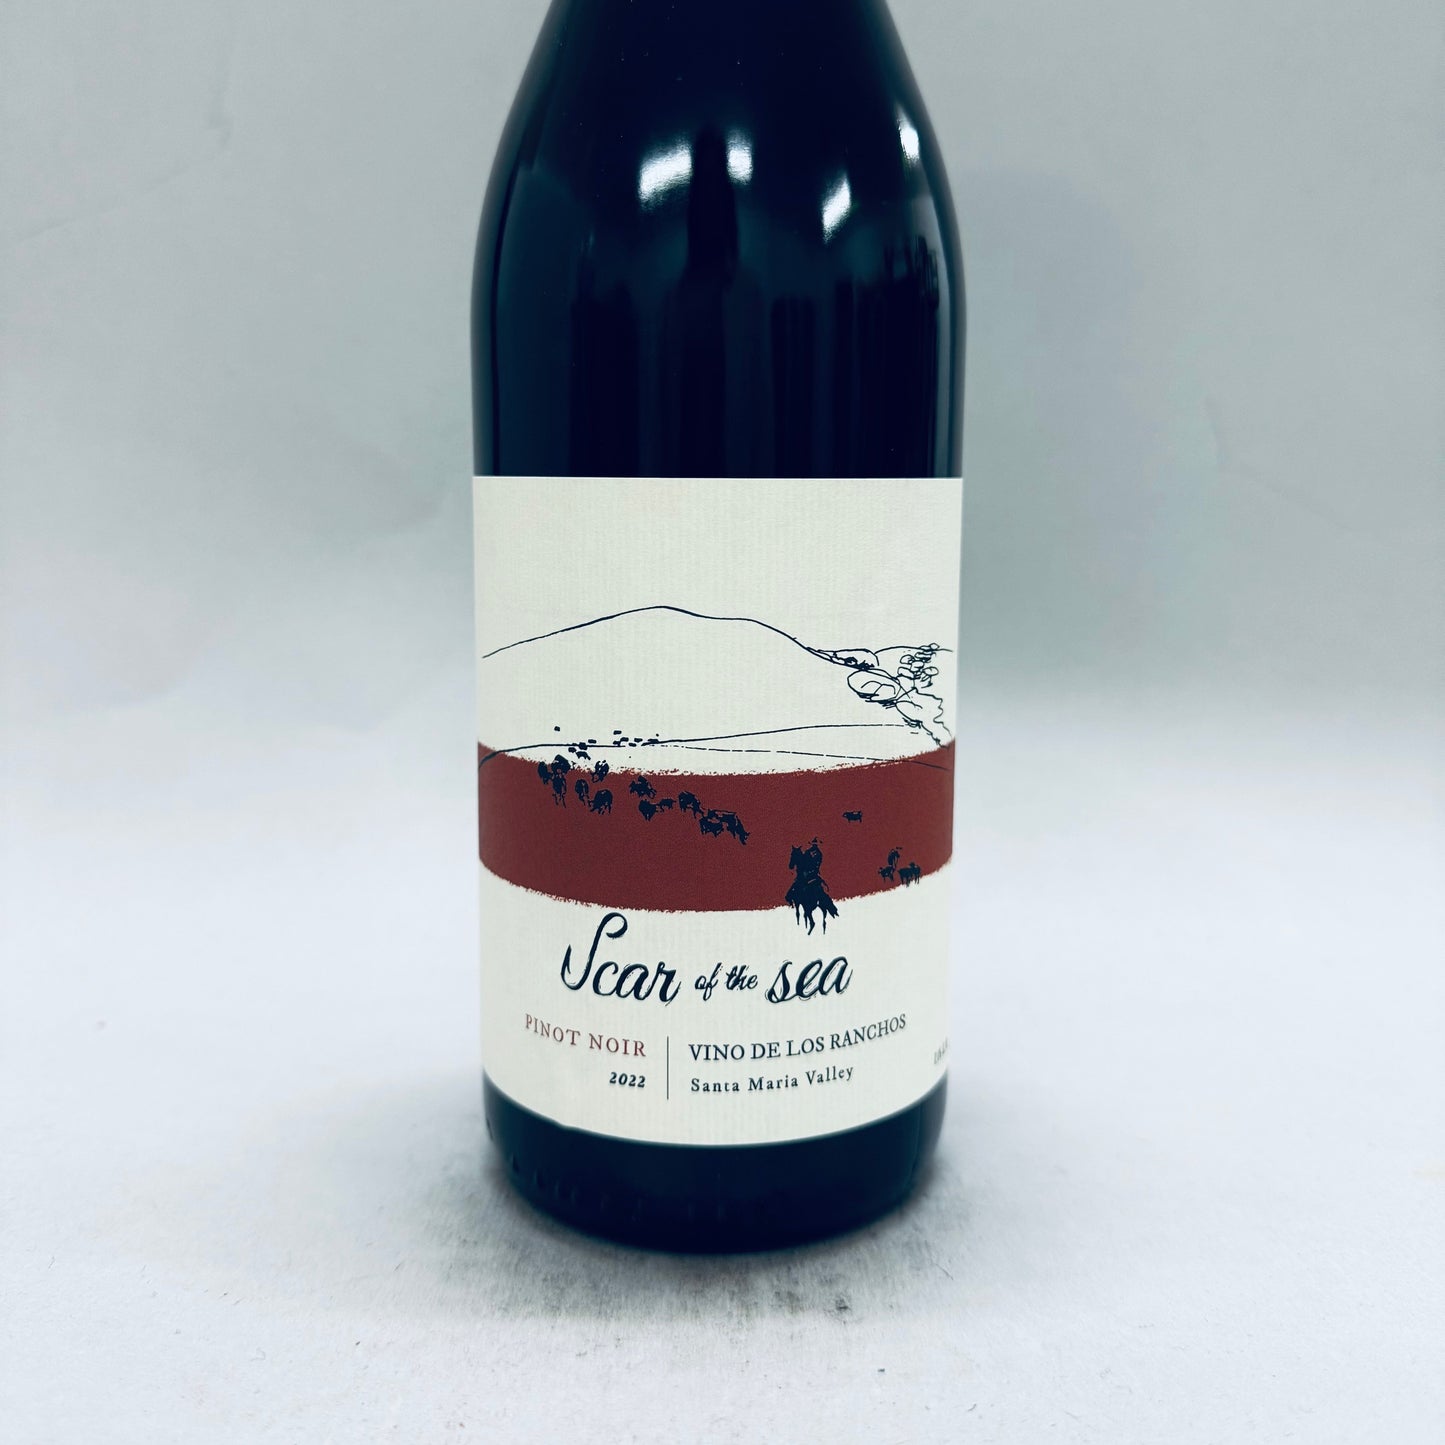 2022 Scar of the Sea Vinos de los Ranchos Pinot Noir